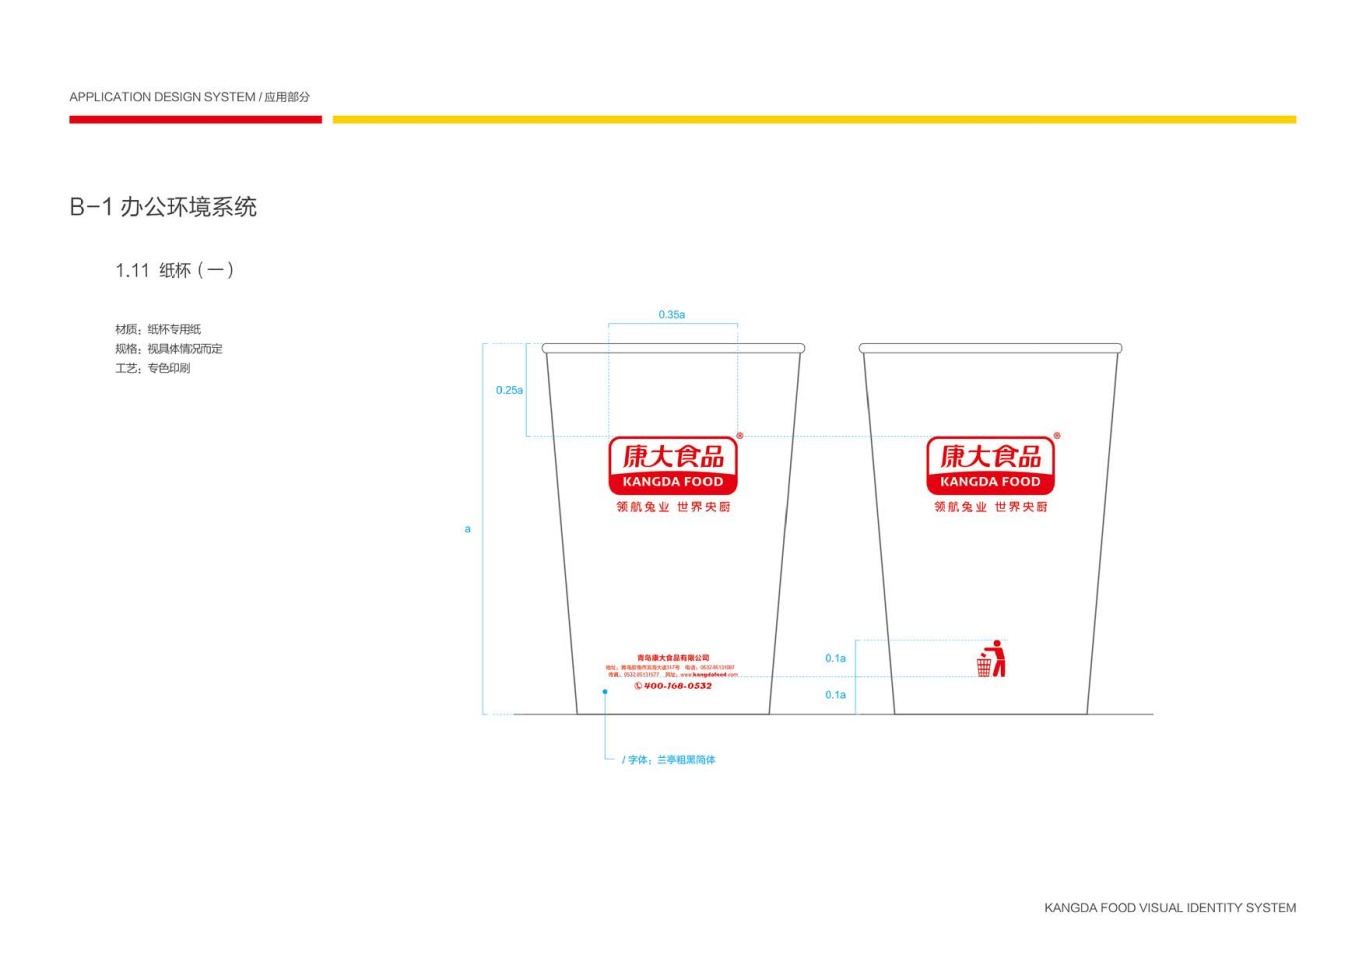 上市公司-康大食品品牌logo及VI设计图62